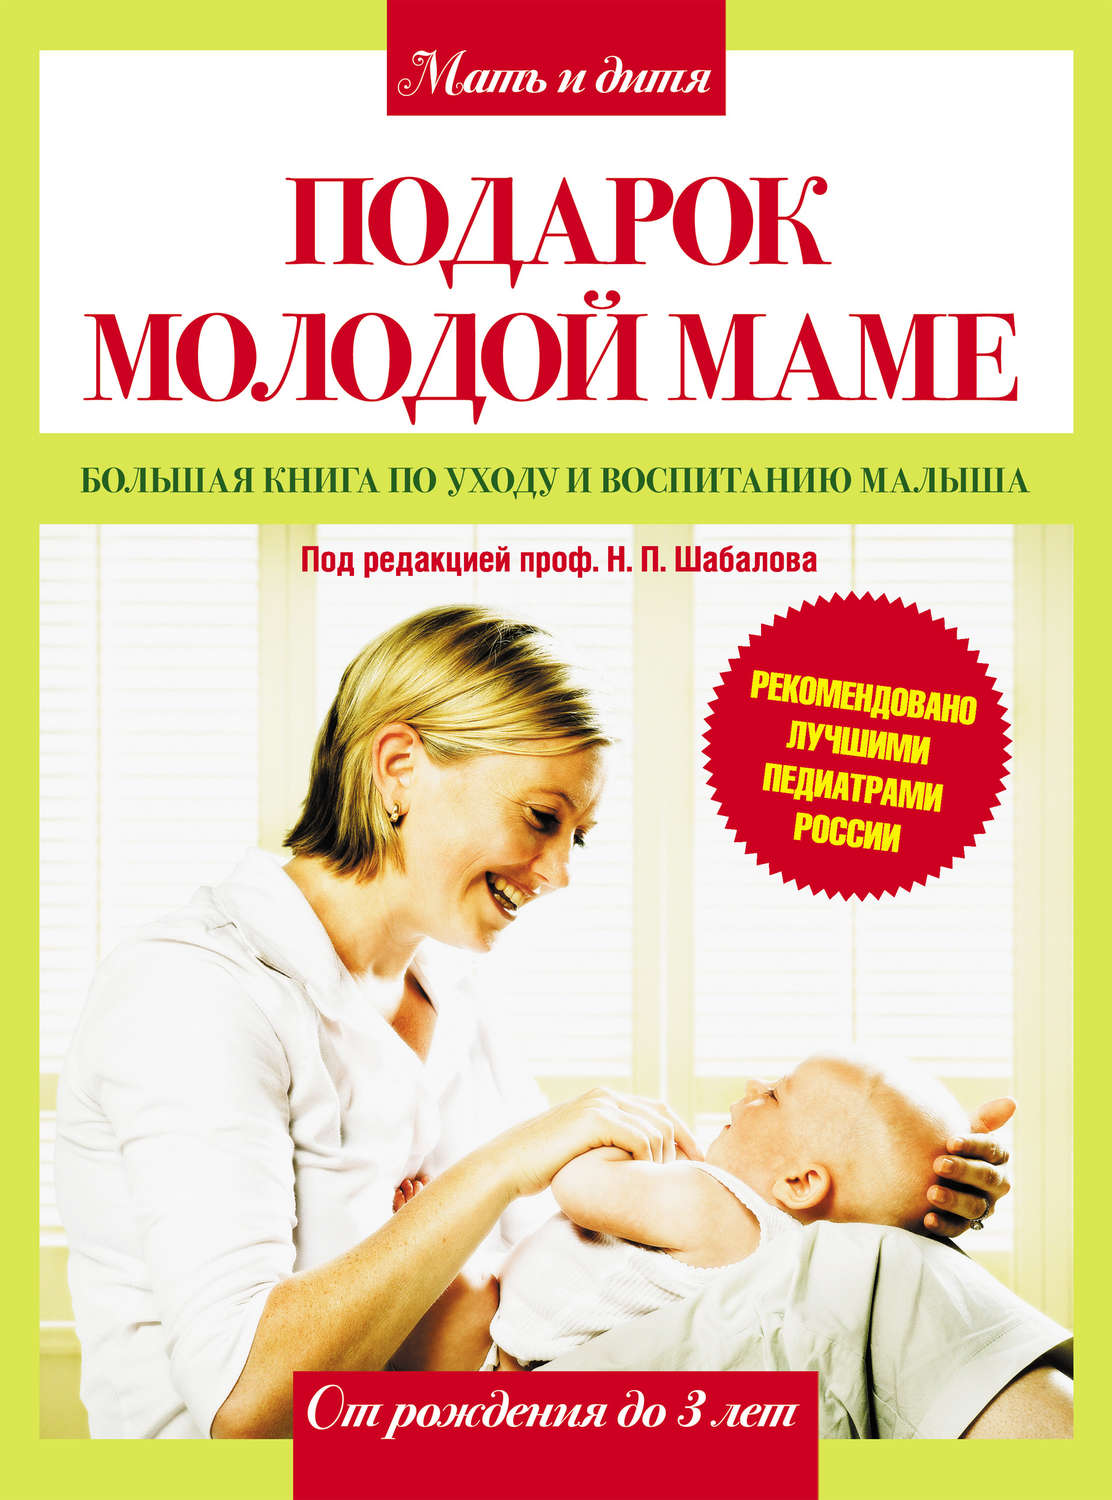 Скачать книгу об уходе за новорожденными